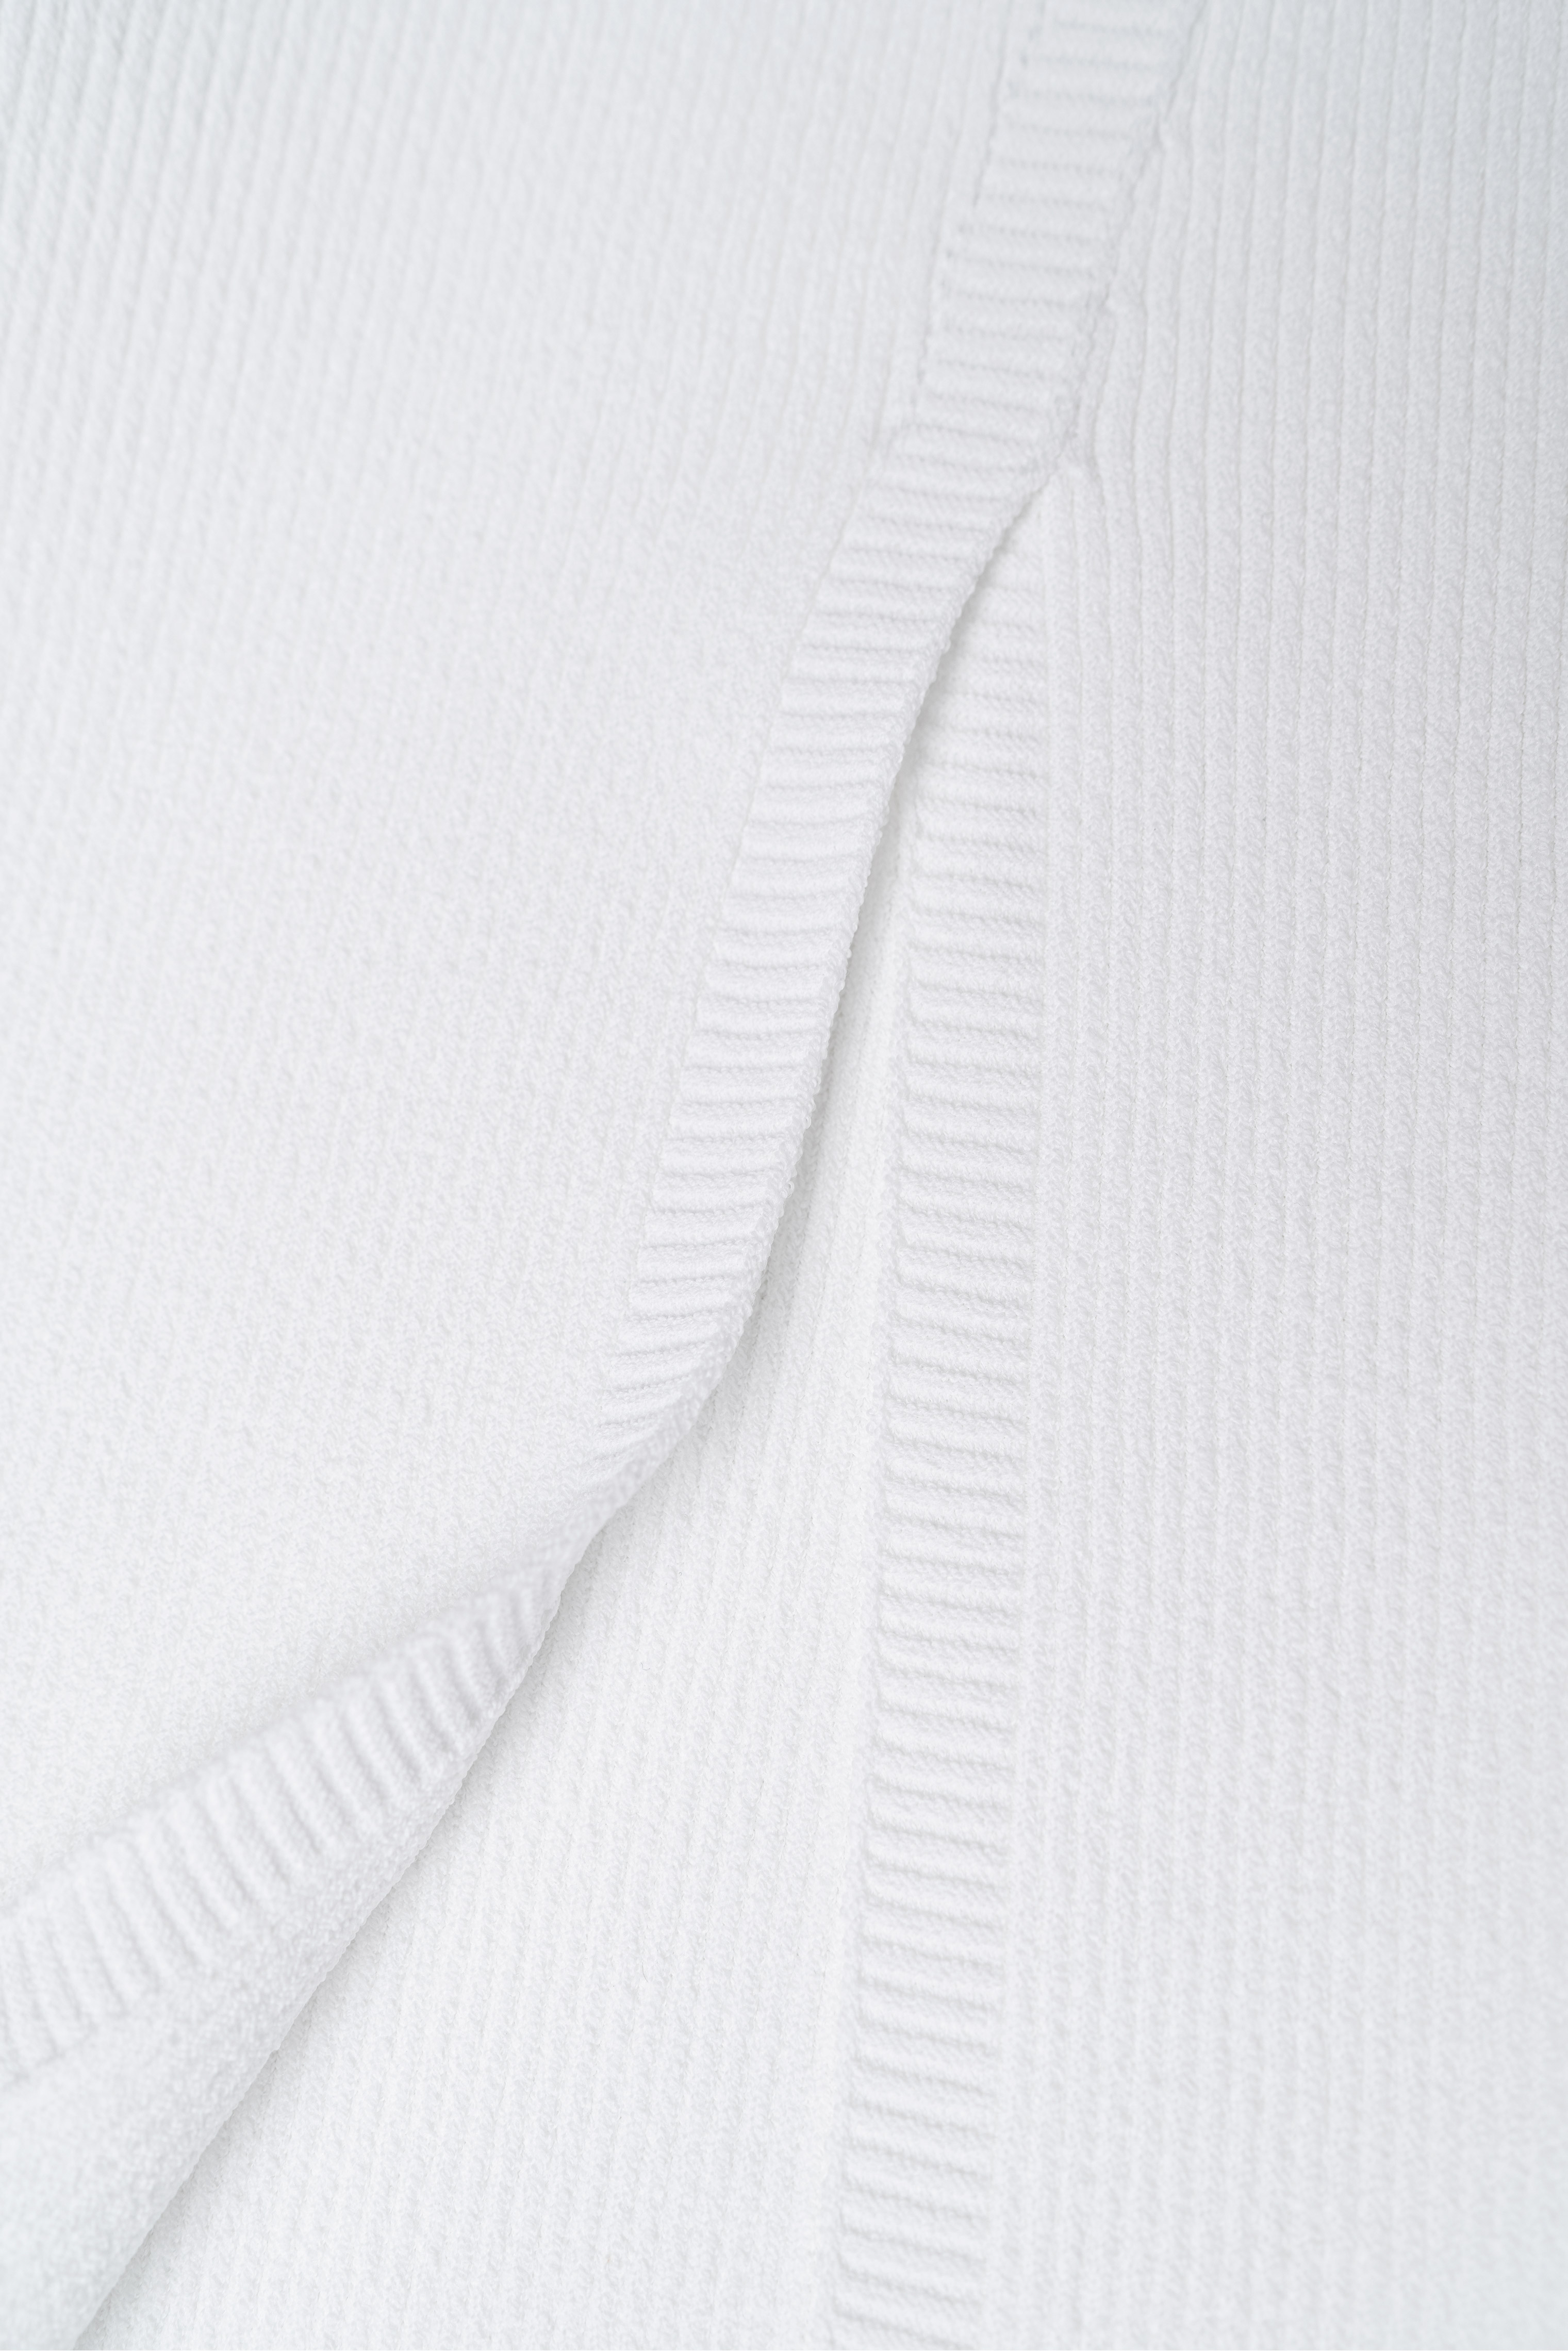 Dress 4586-02 White from BRUSNiKA